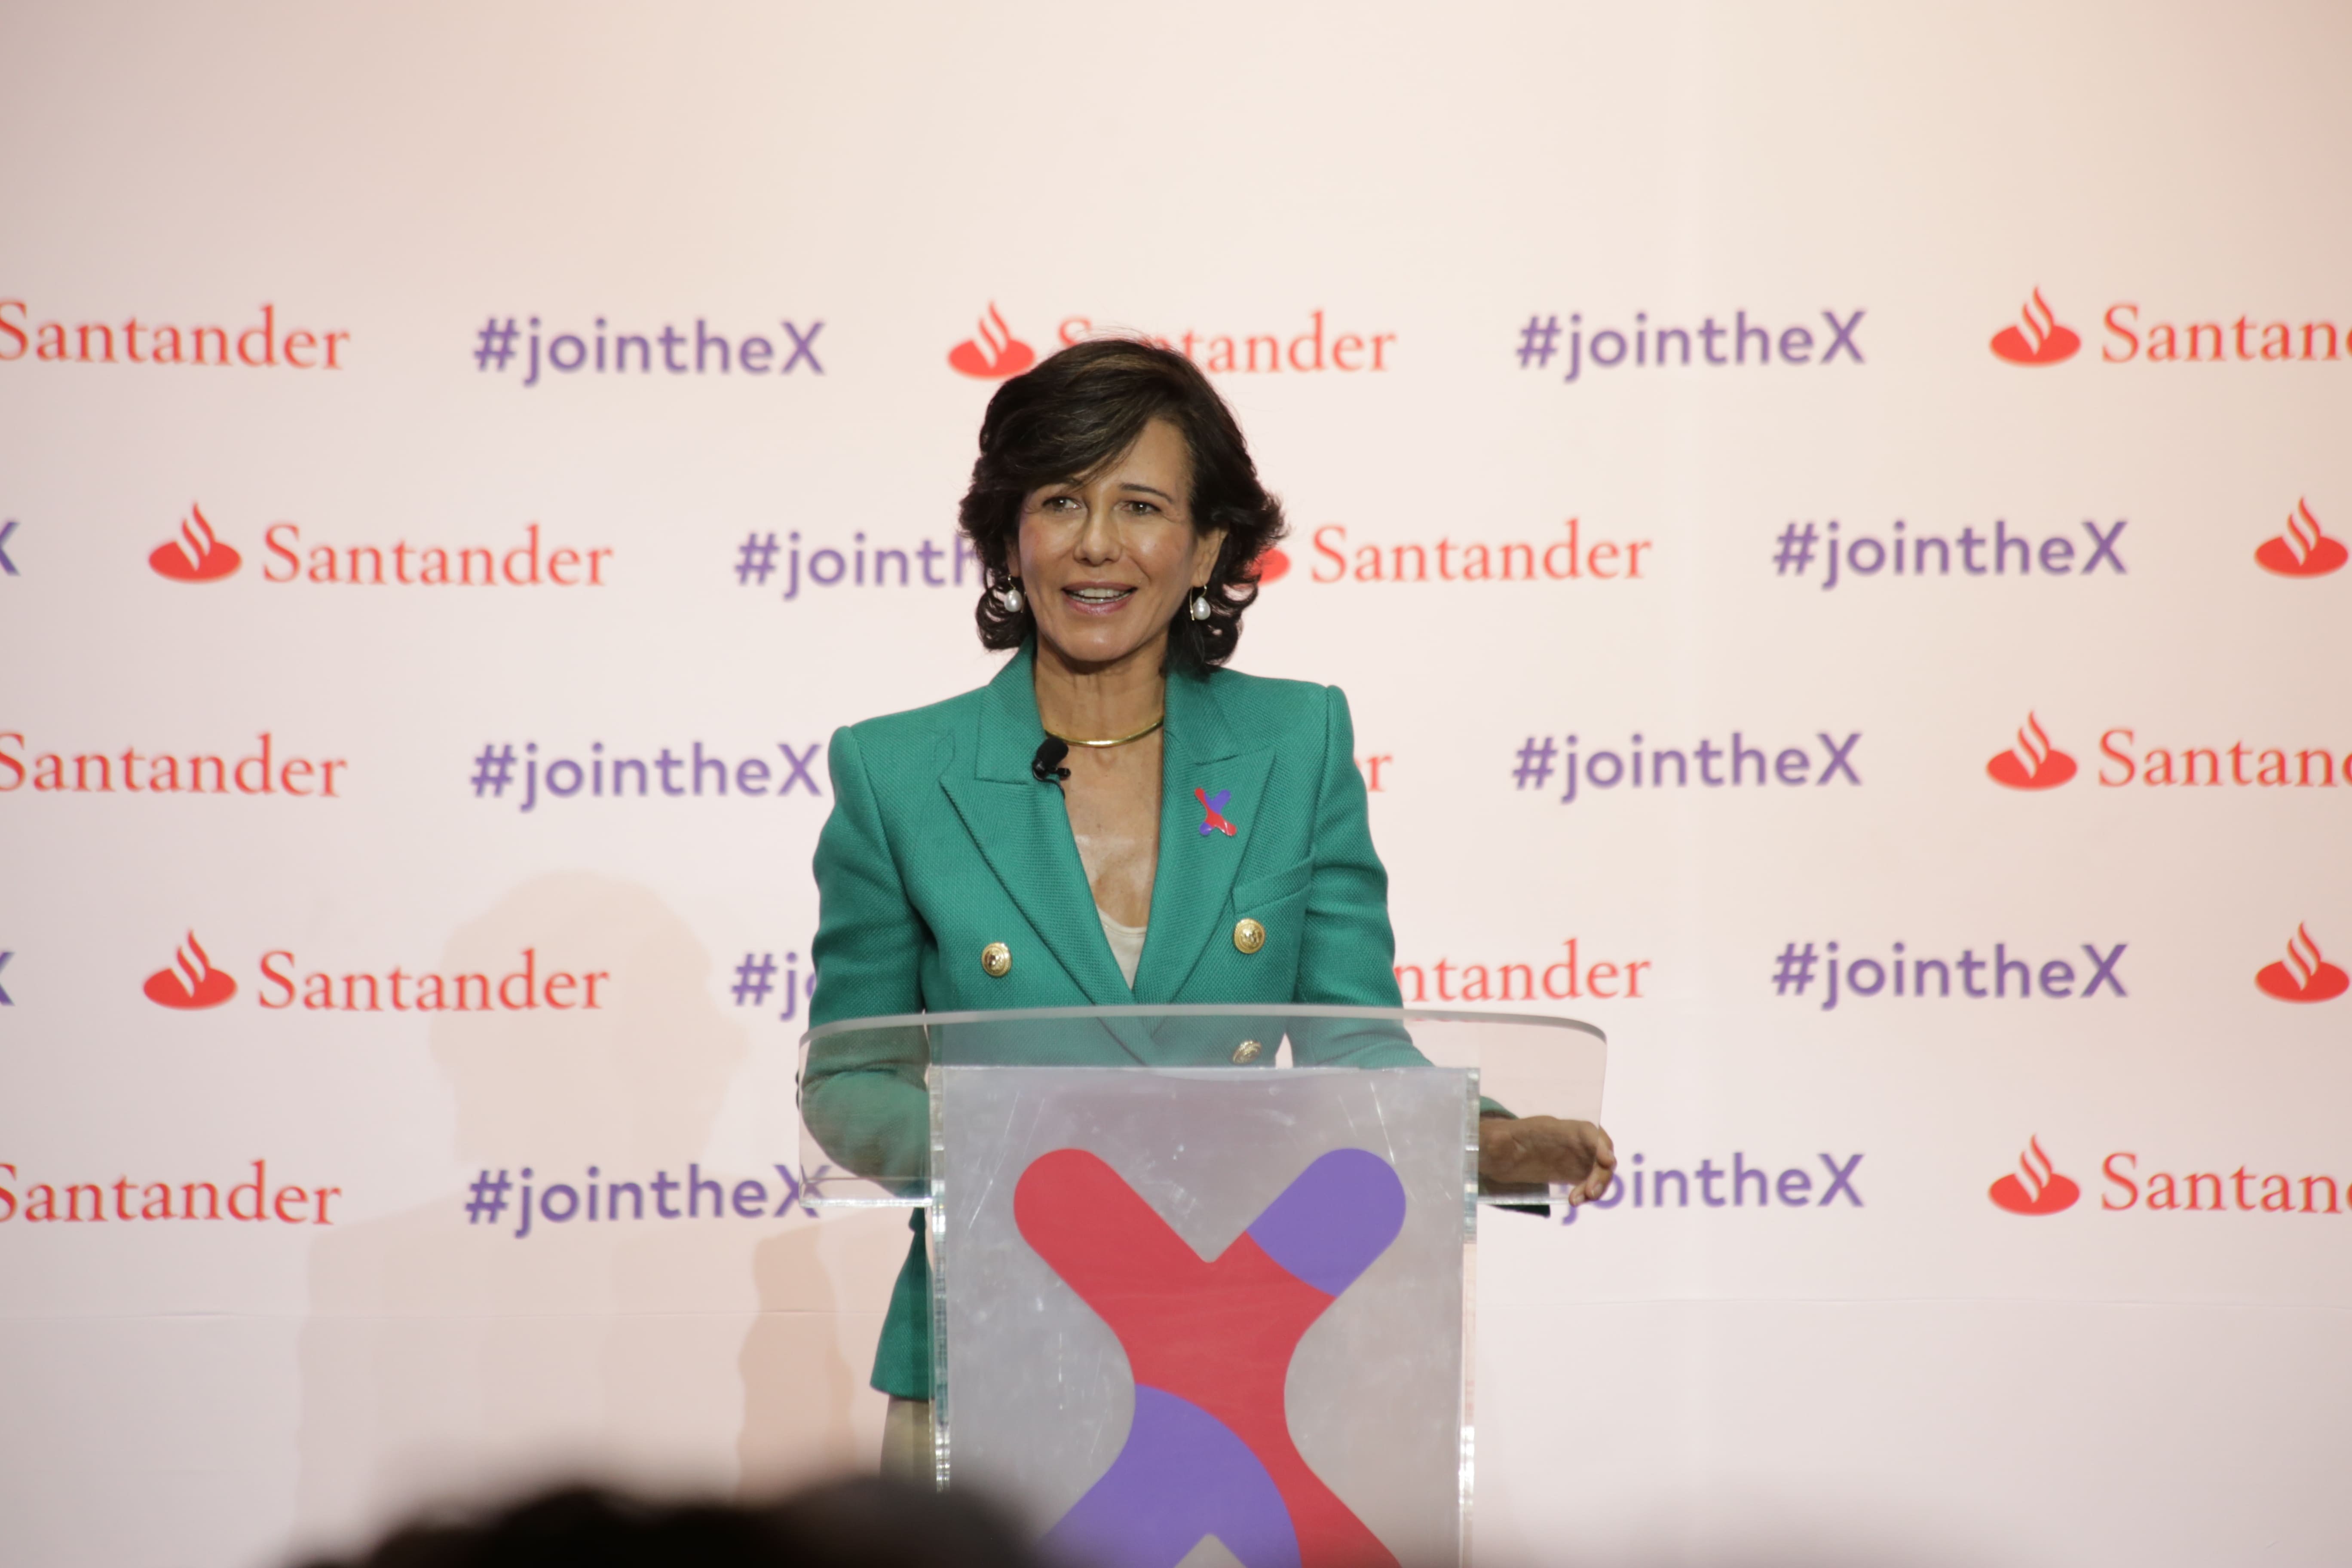 Nombran a Santander como el Banco del Año en Inclusión Financiera